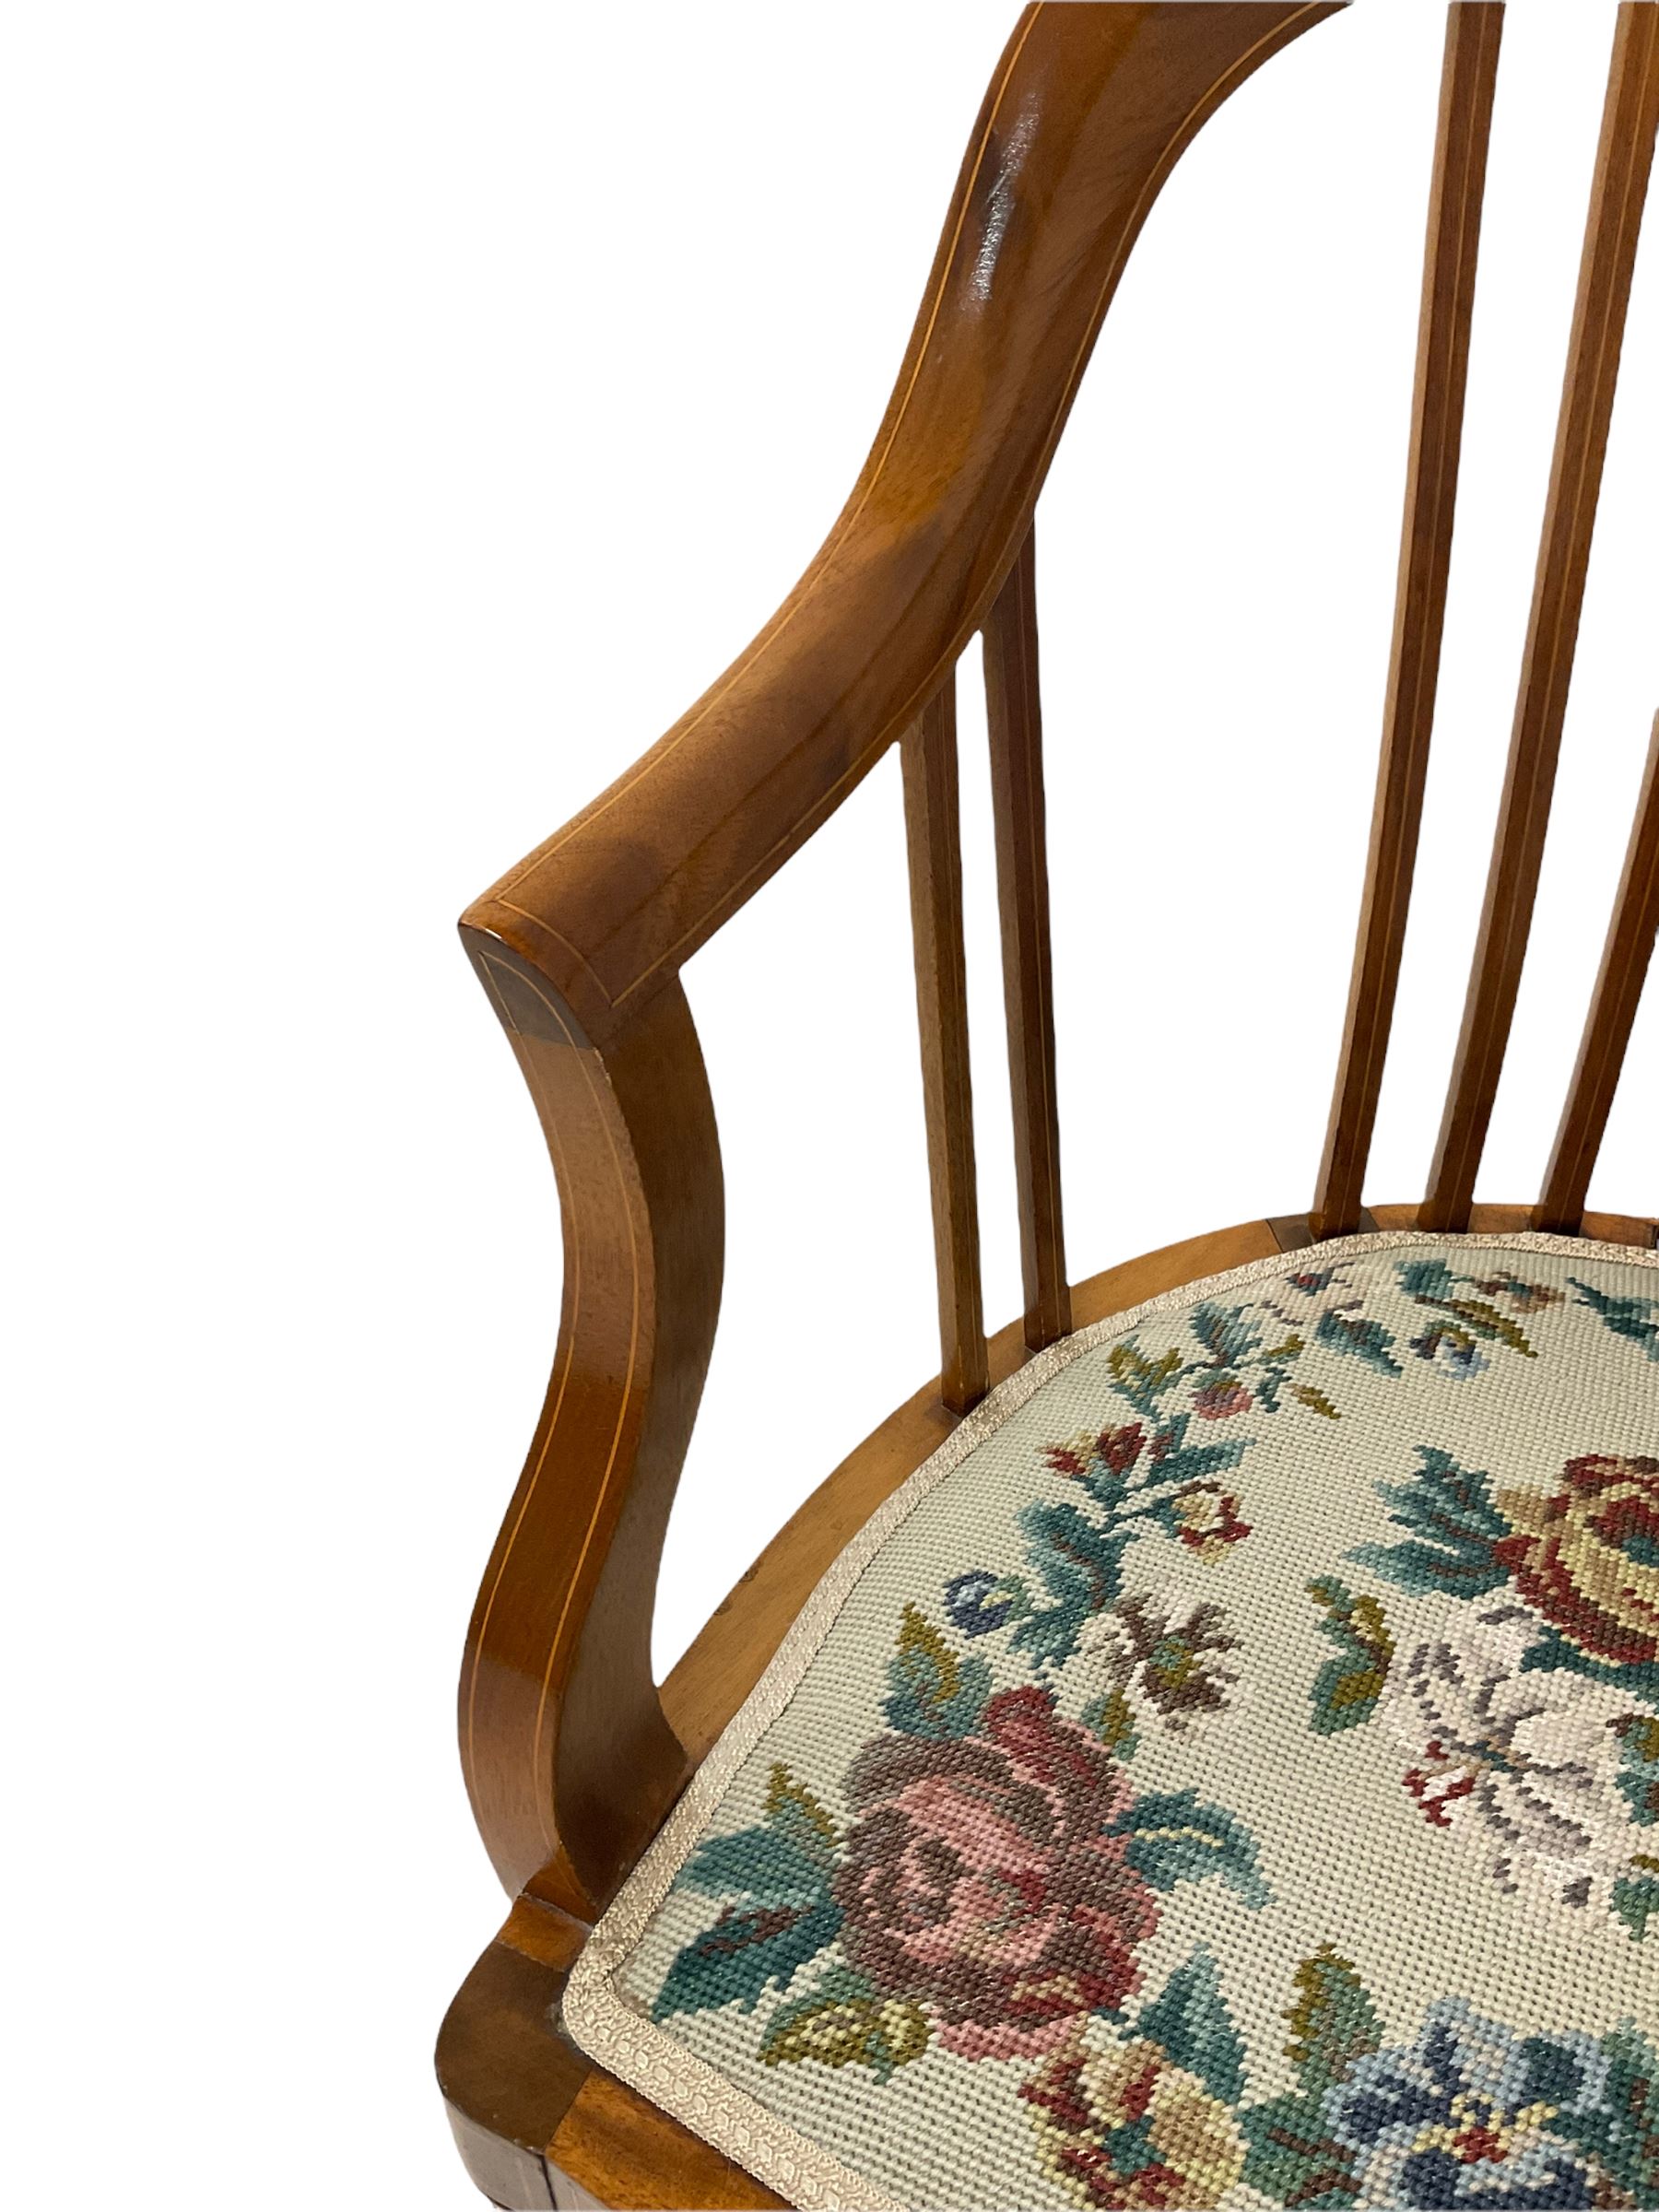 Edwardian mahogany tub shape chair - Image 4 of 4